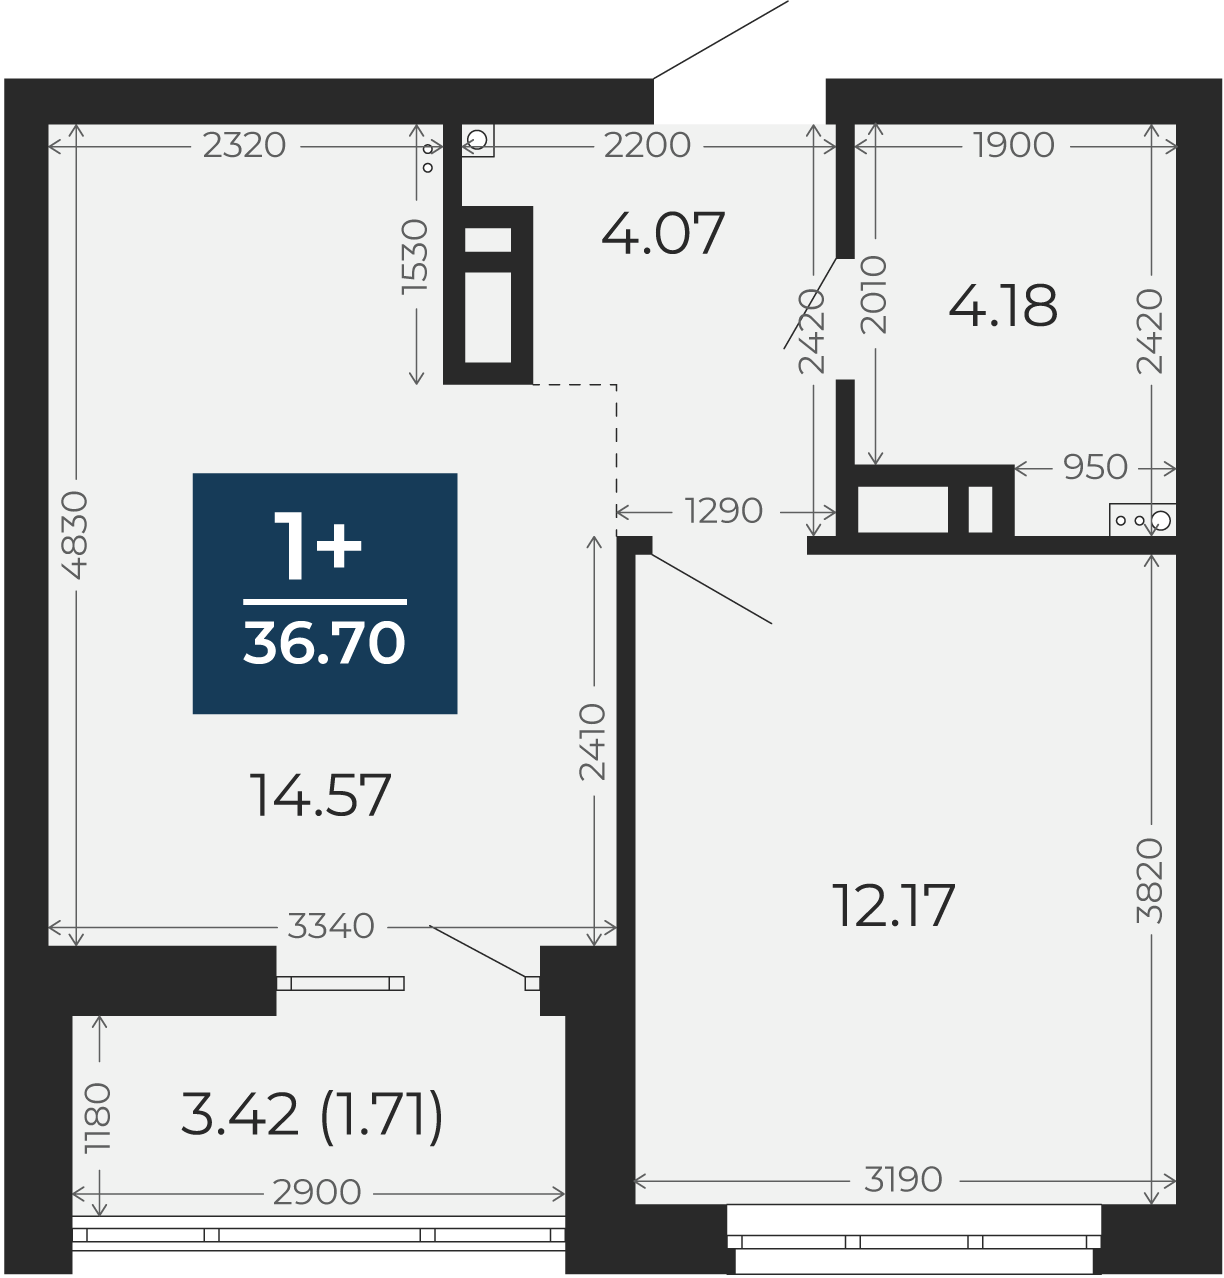 Квартира № 80, 1-комнатная, 34.6 кв. м, 11 этаж